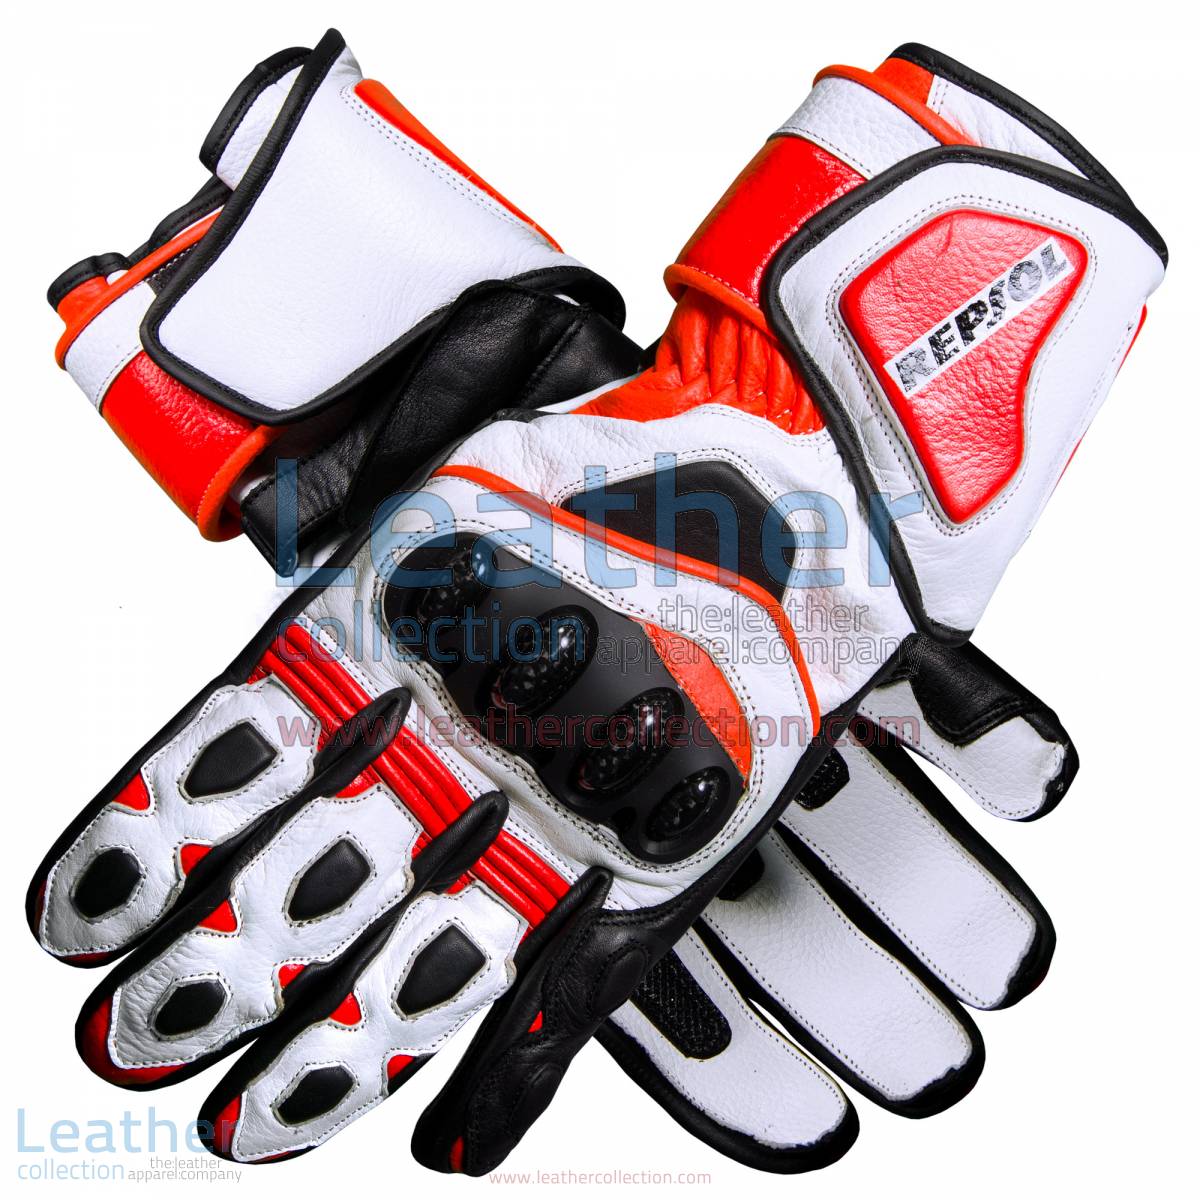 Repsol Pro Motorbike Leather Gloves | Repsol Pro motorcycle Leather Gloves